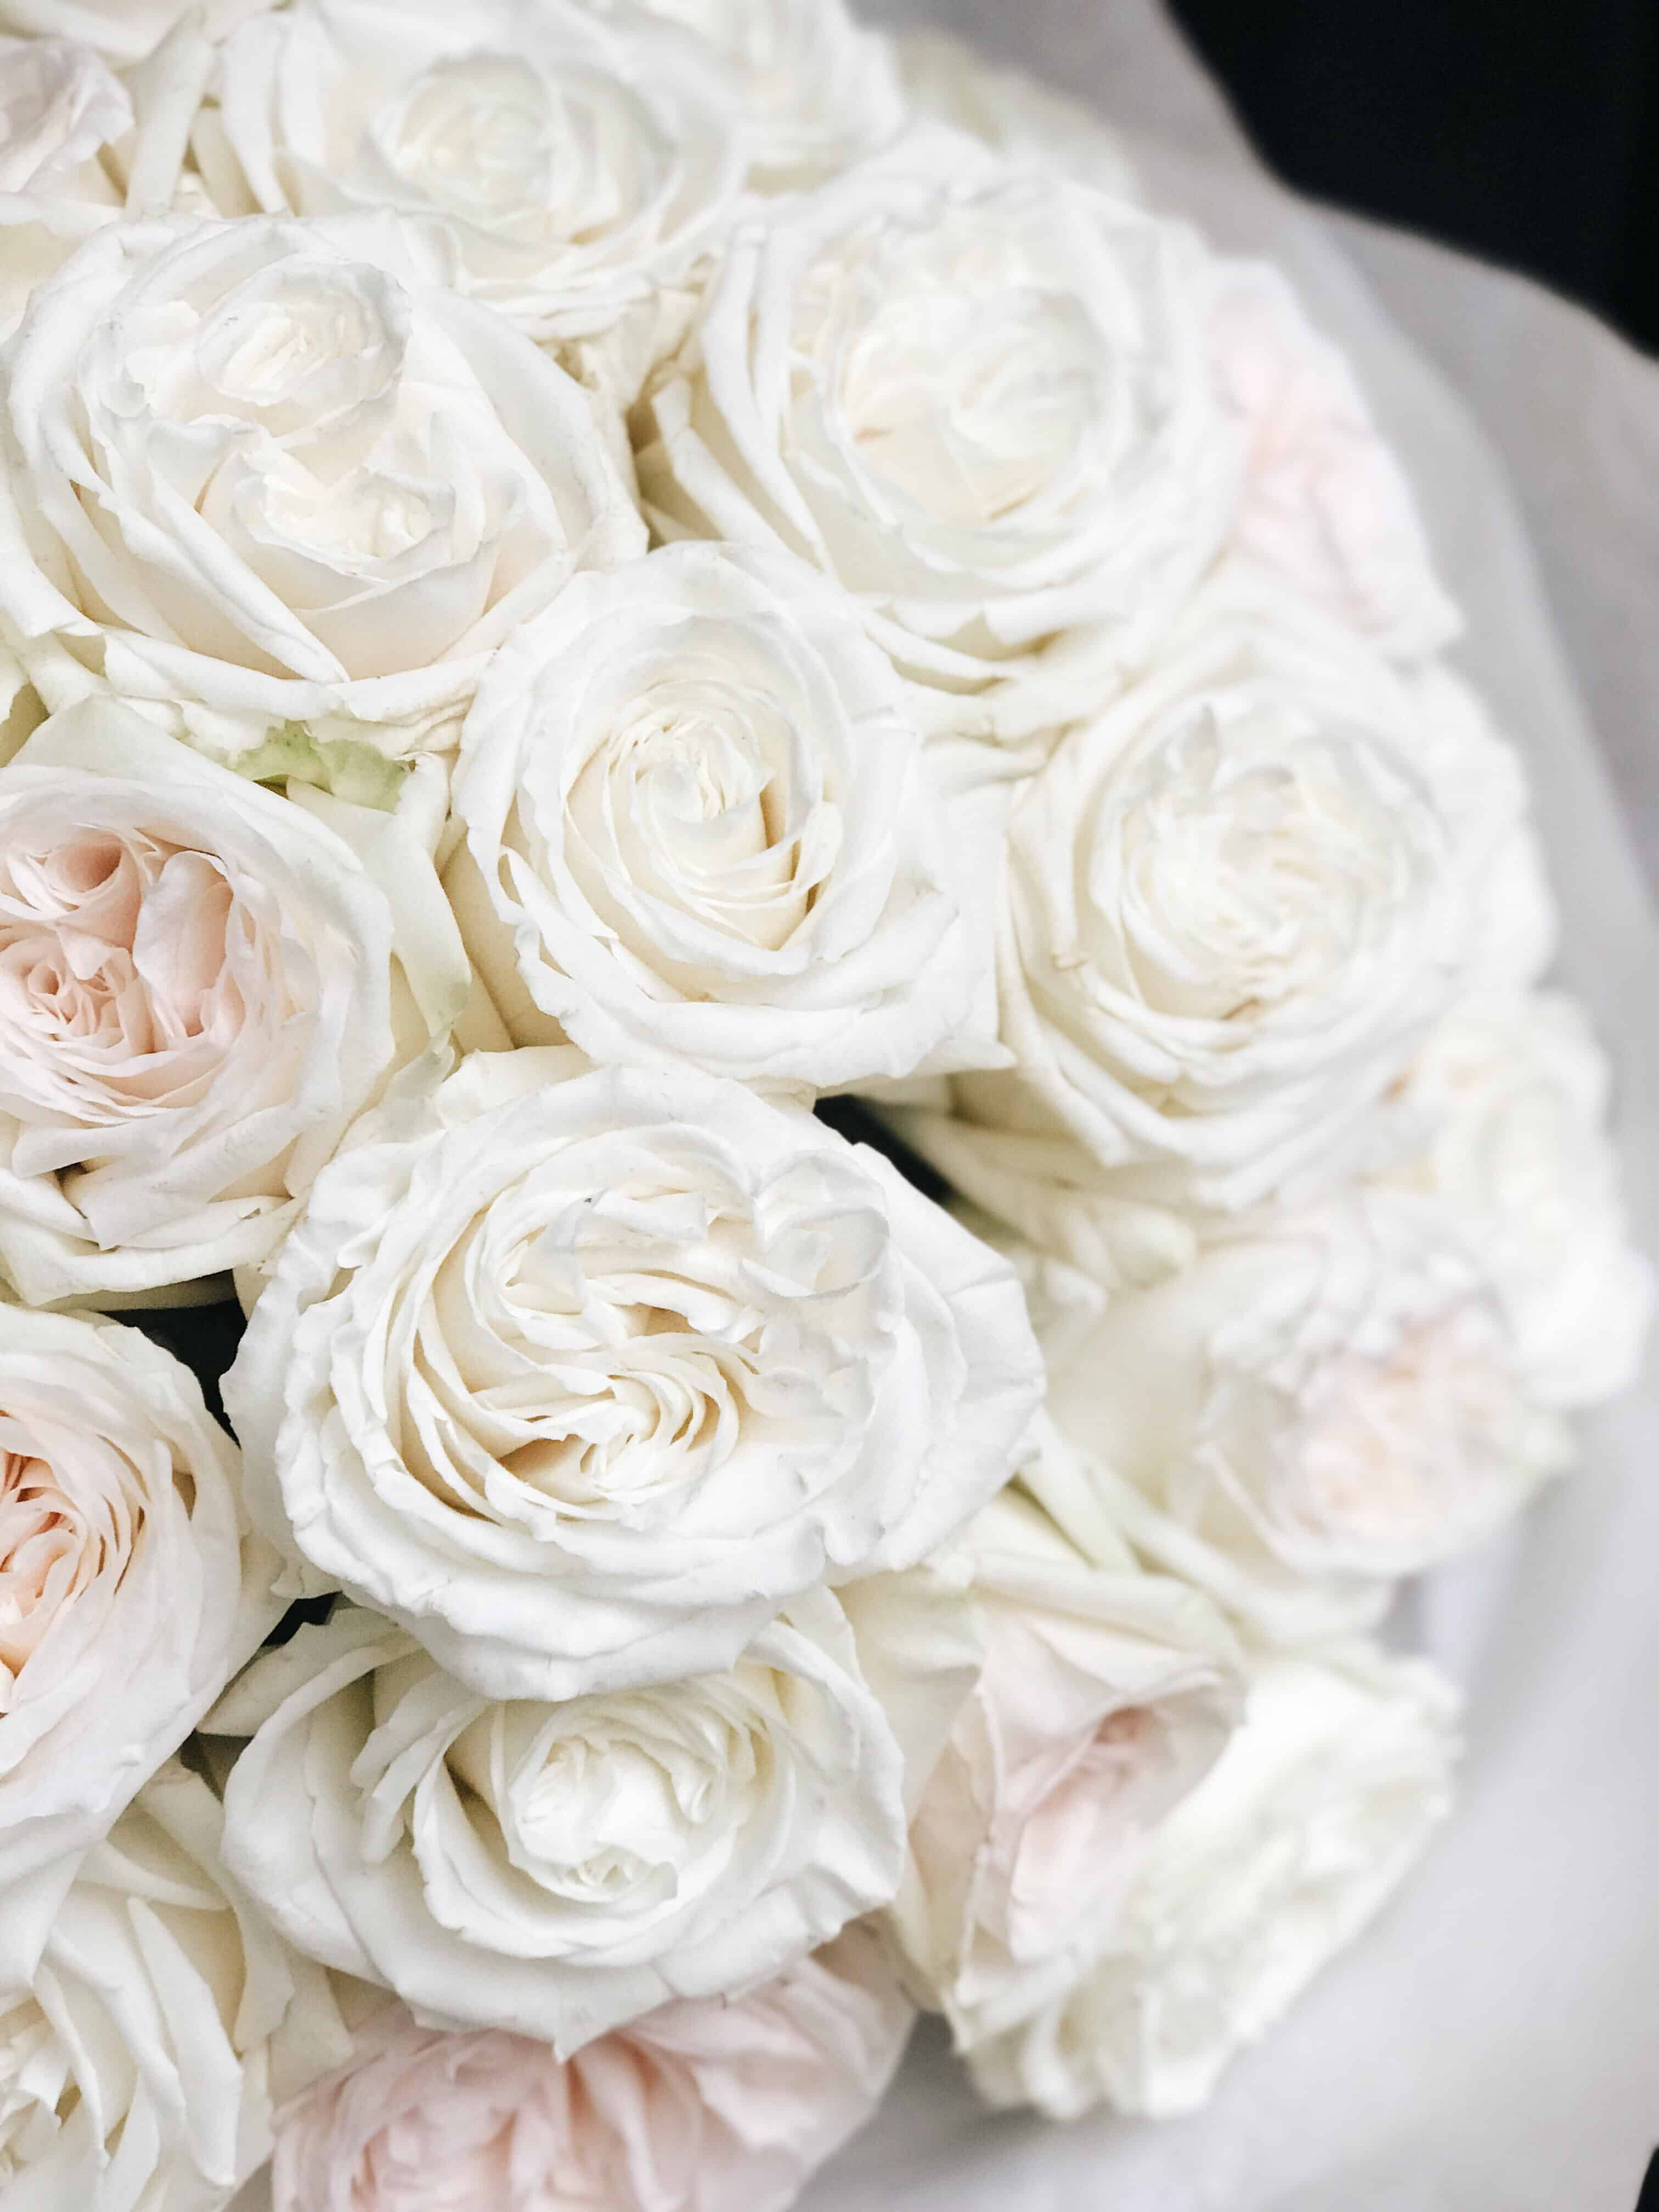 Белые розы оттенки